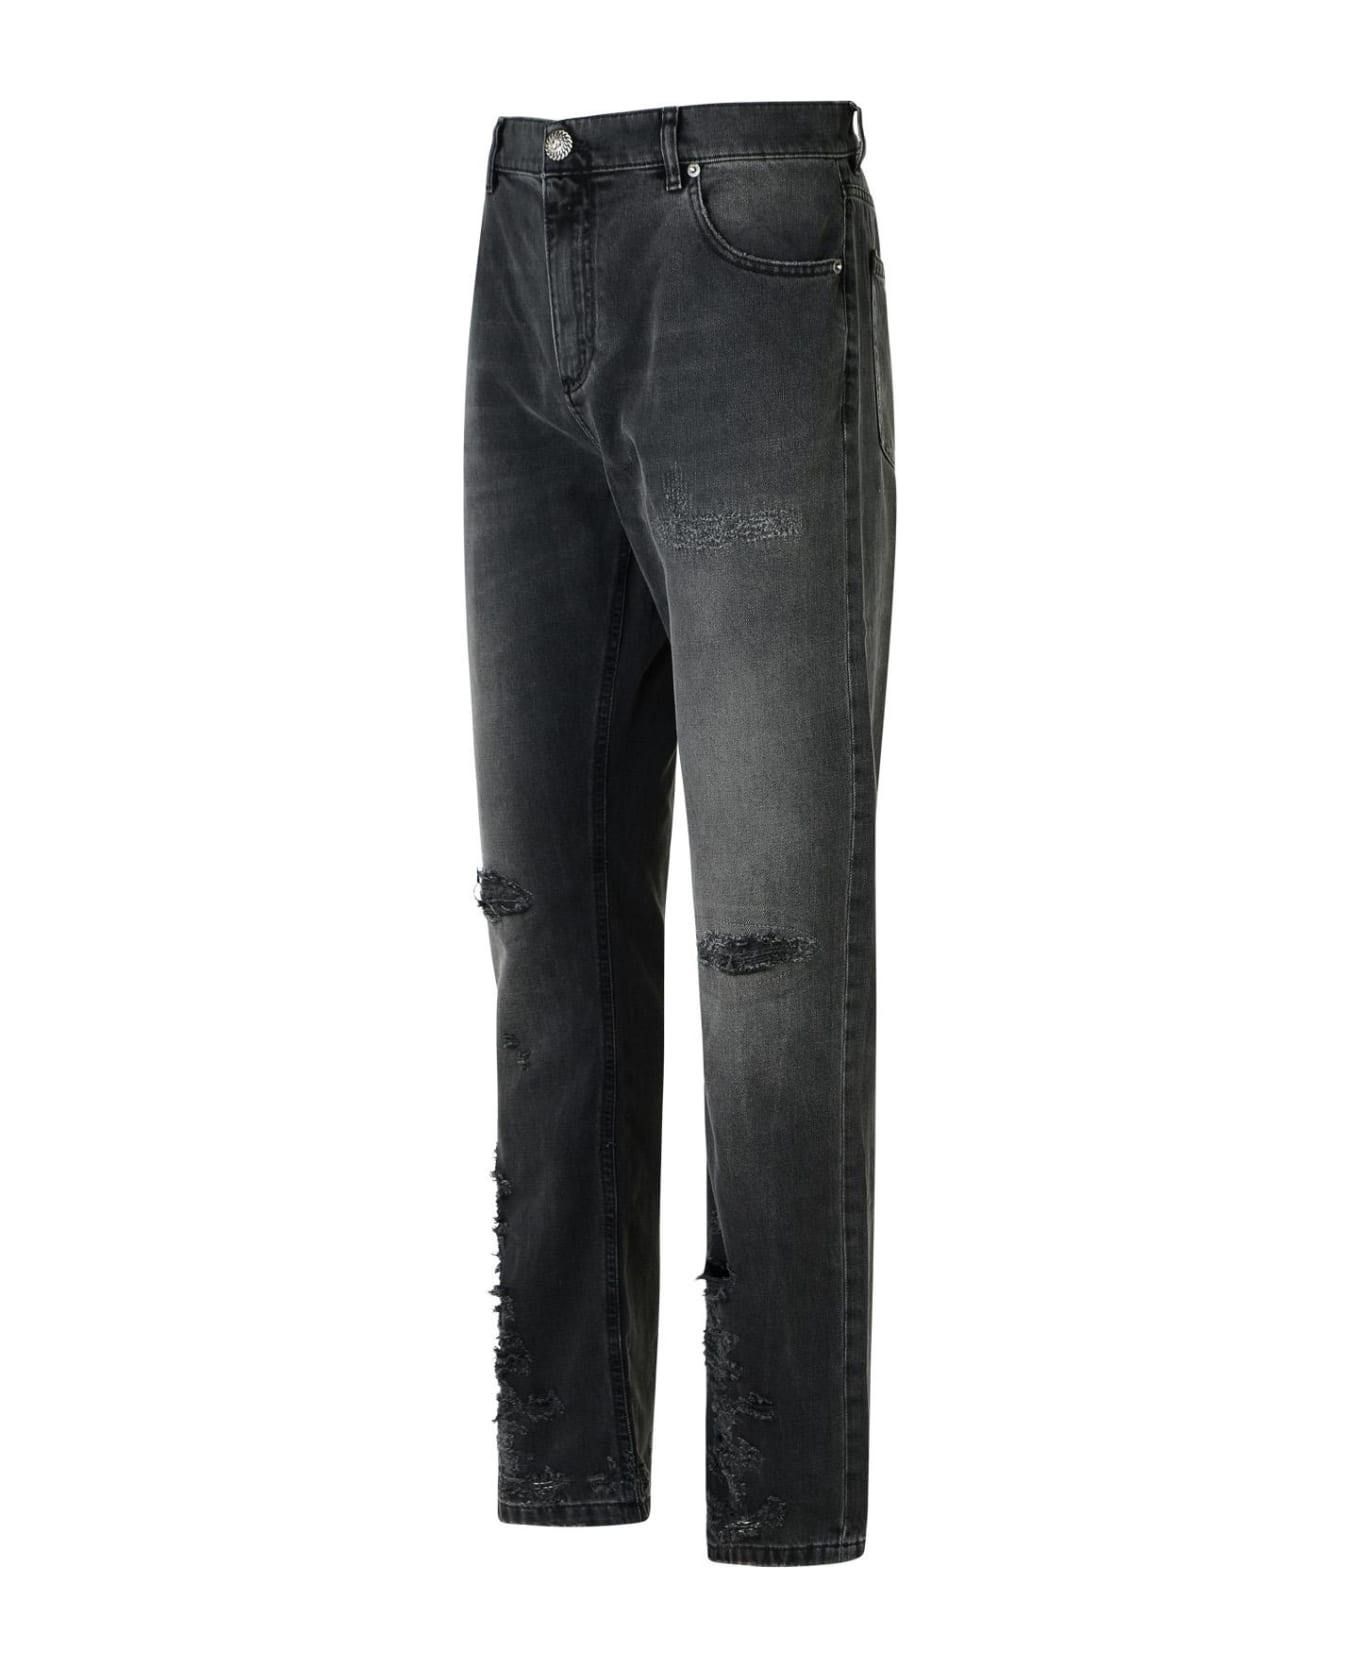 Black Cotton Jeans - 2